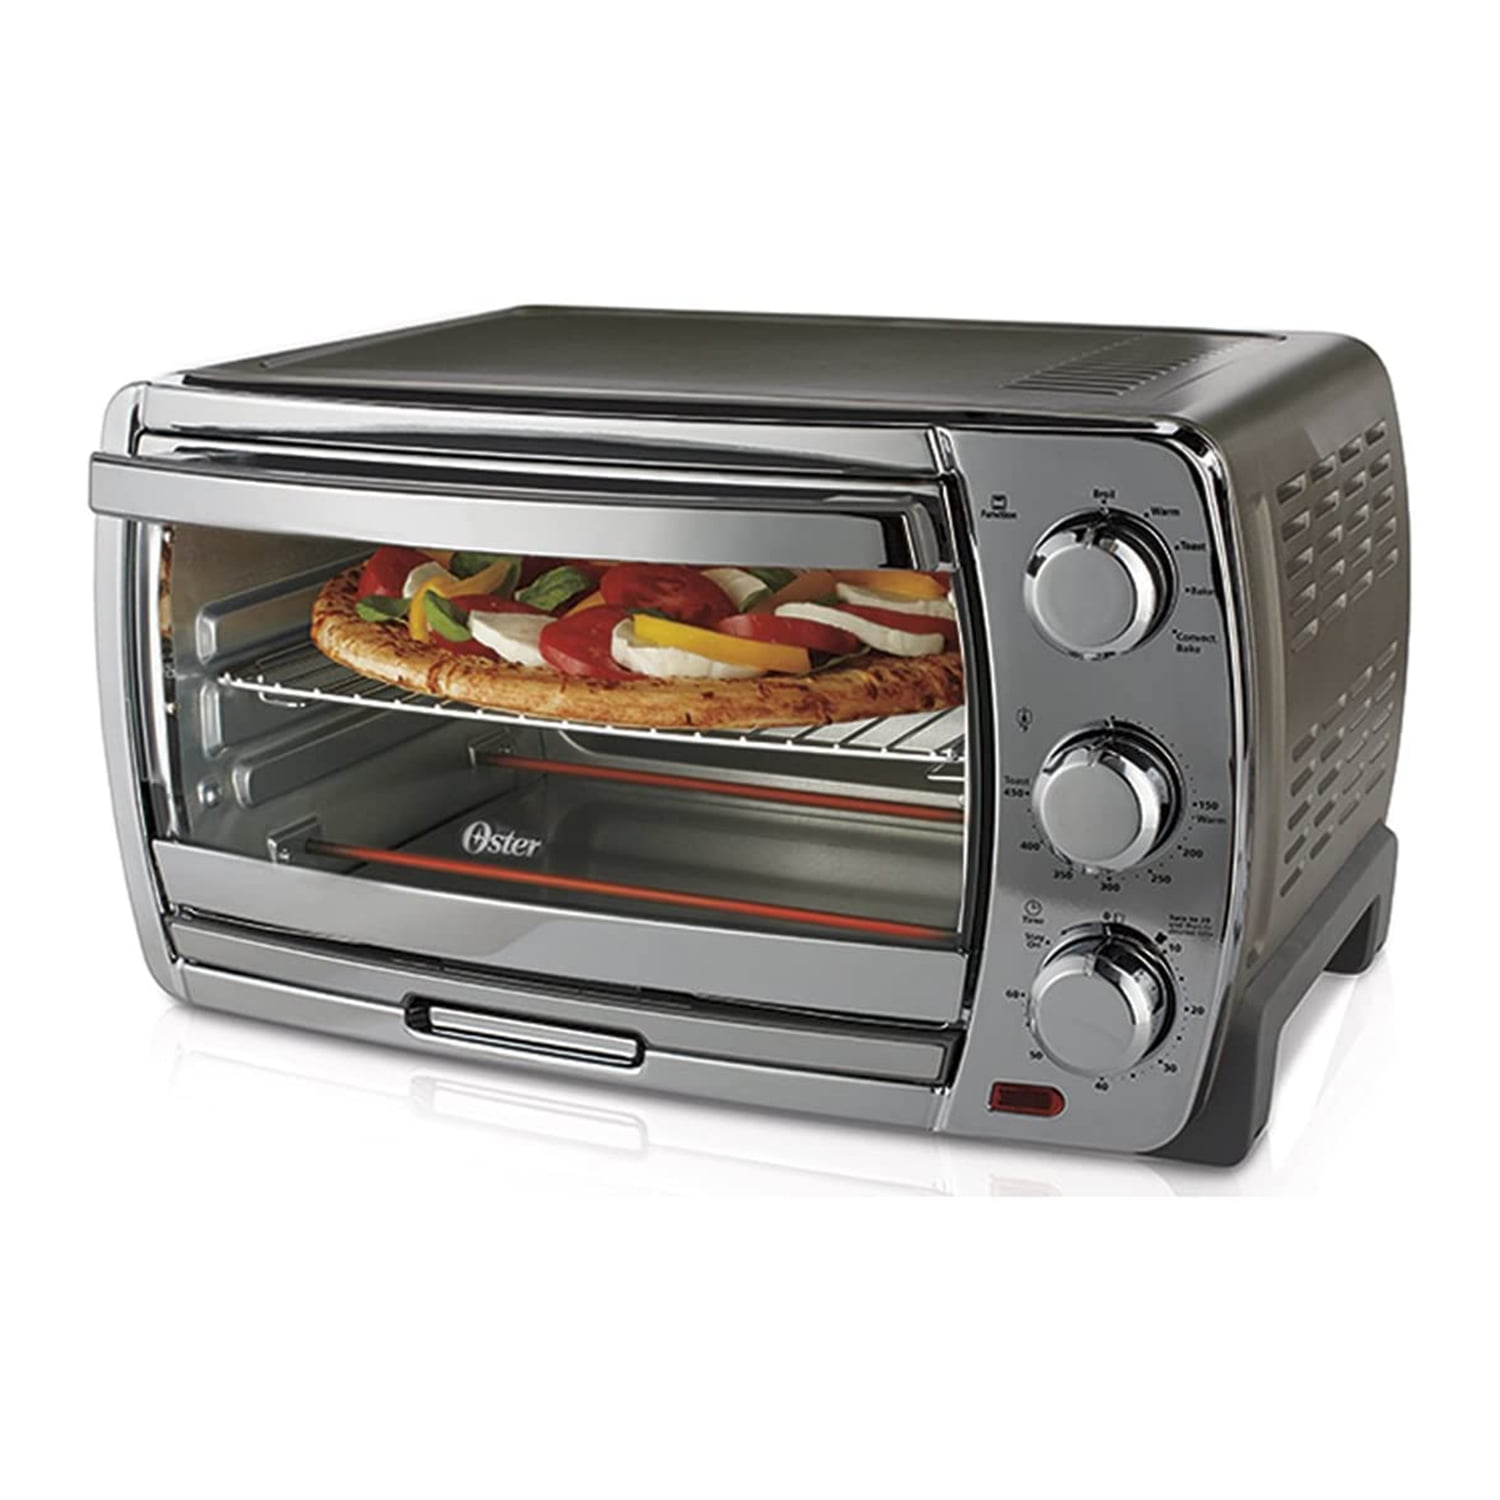 Мини печь Toaster Oven. Мини печь тостер Панасоник. Тостер с духовкой мини. Мини-печь электрическая с конвекцией.